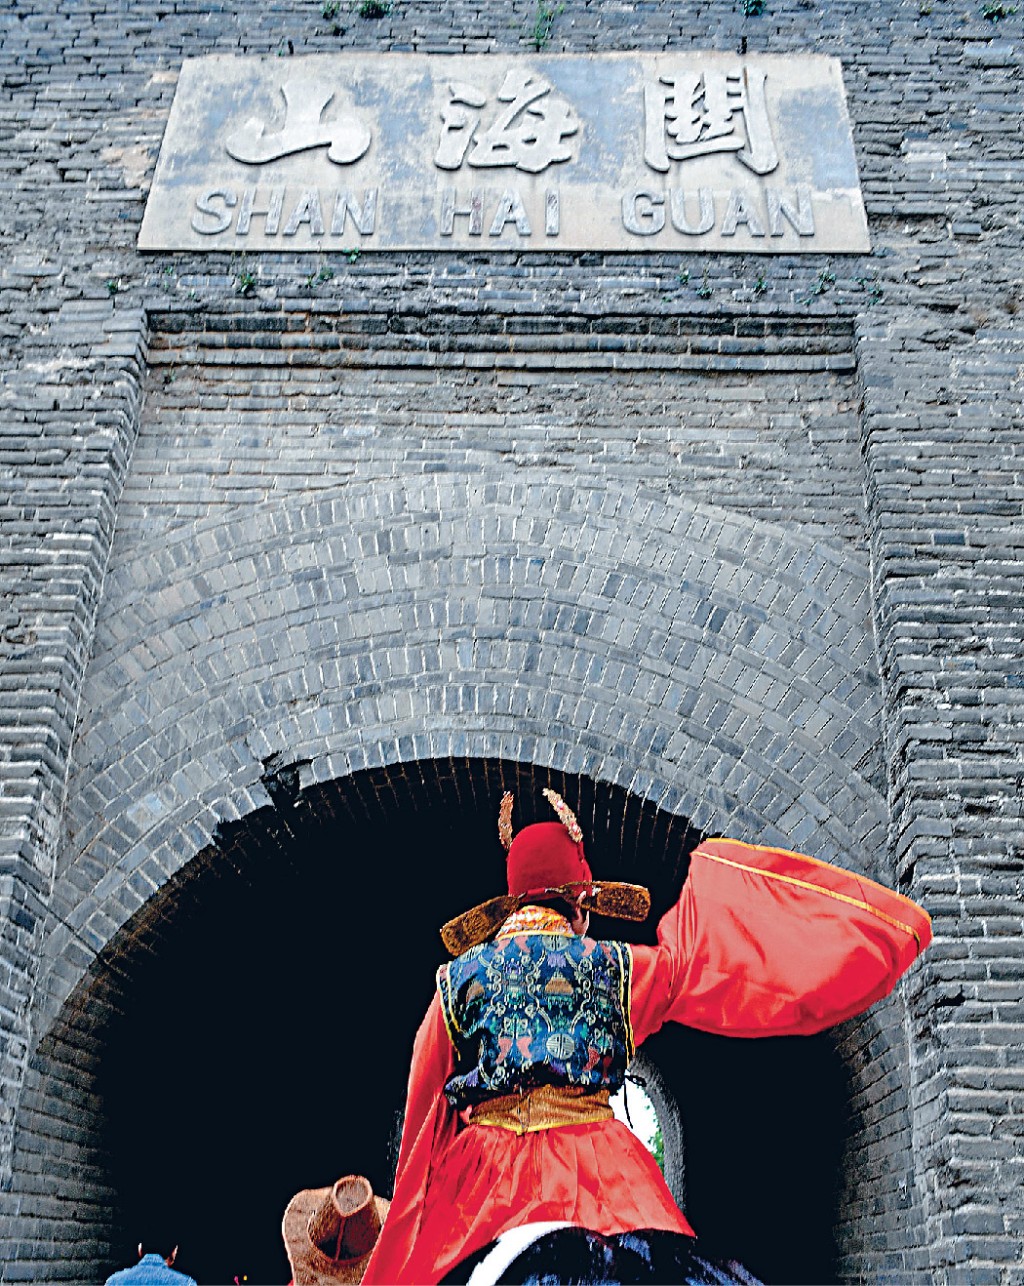 位于河北省秦皇岛市的山海关有「天下第一关之称」，是长城其中一个重要关卡。